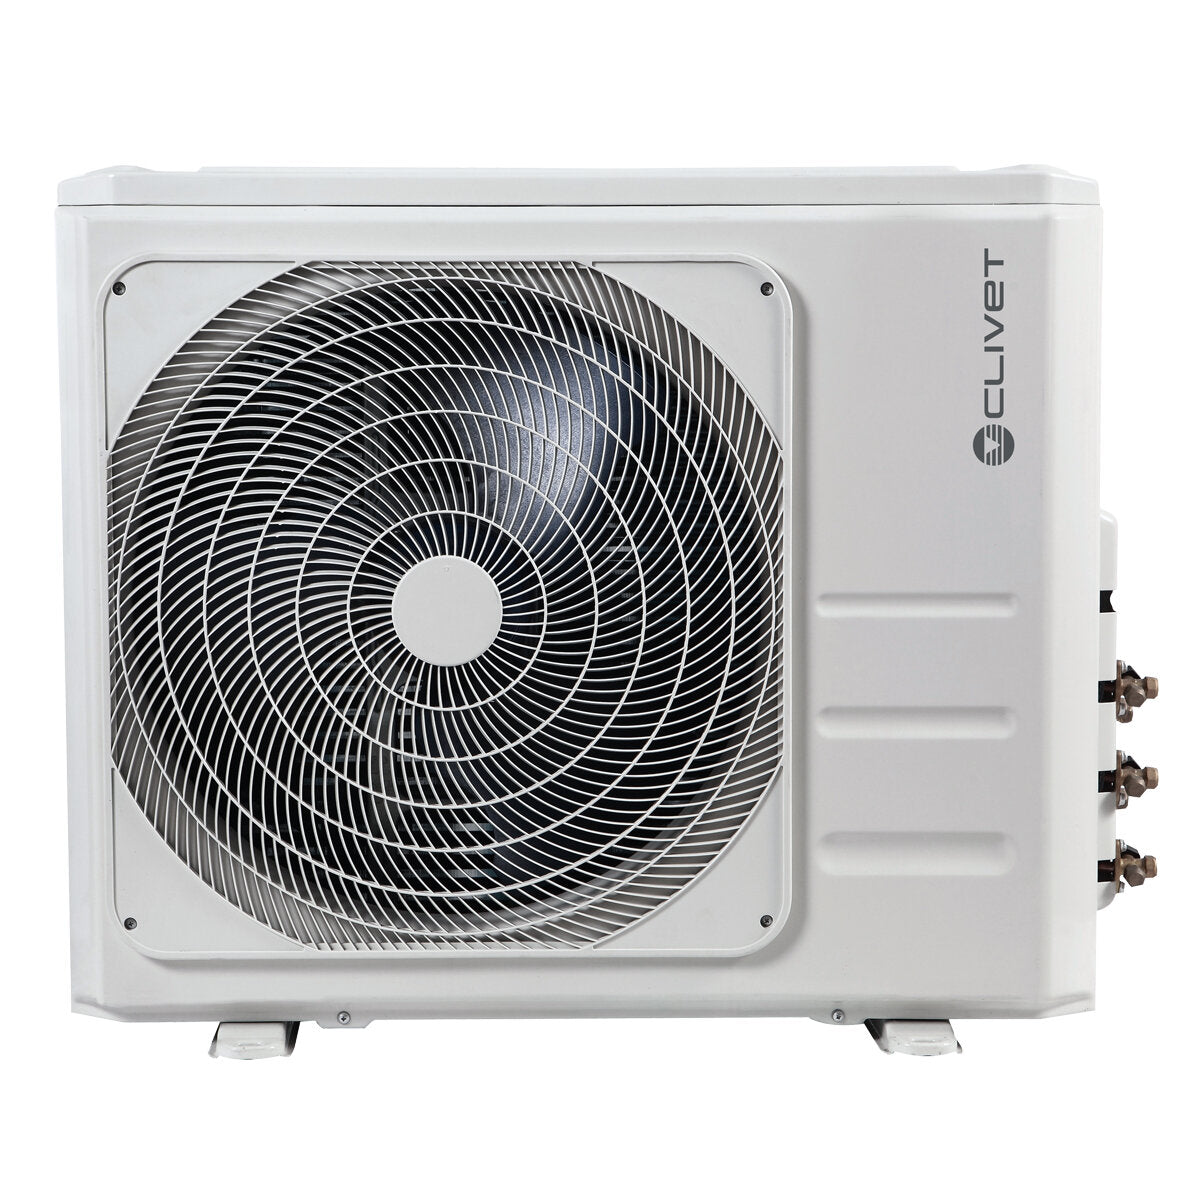 Clivet BOX 2 air conditioner 650x650 4-way cassette 4-way cassette trial split 12000+12000+18000 BTU inverter A++ outdoor unit 10.5 kW